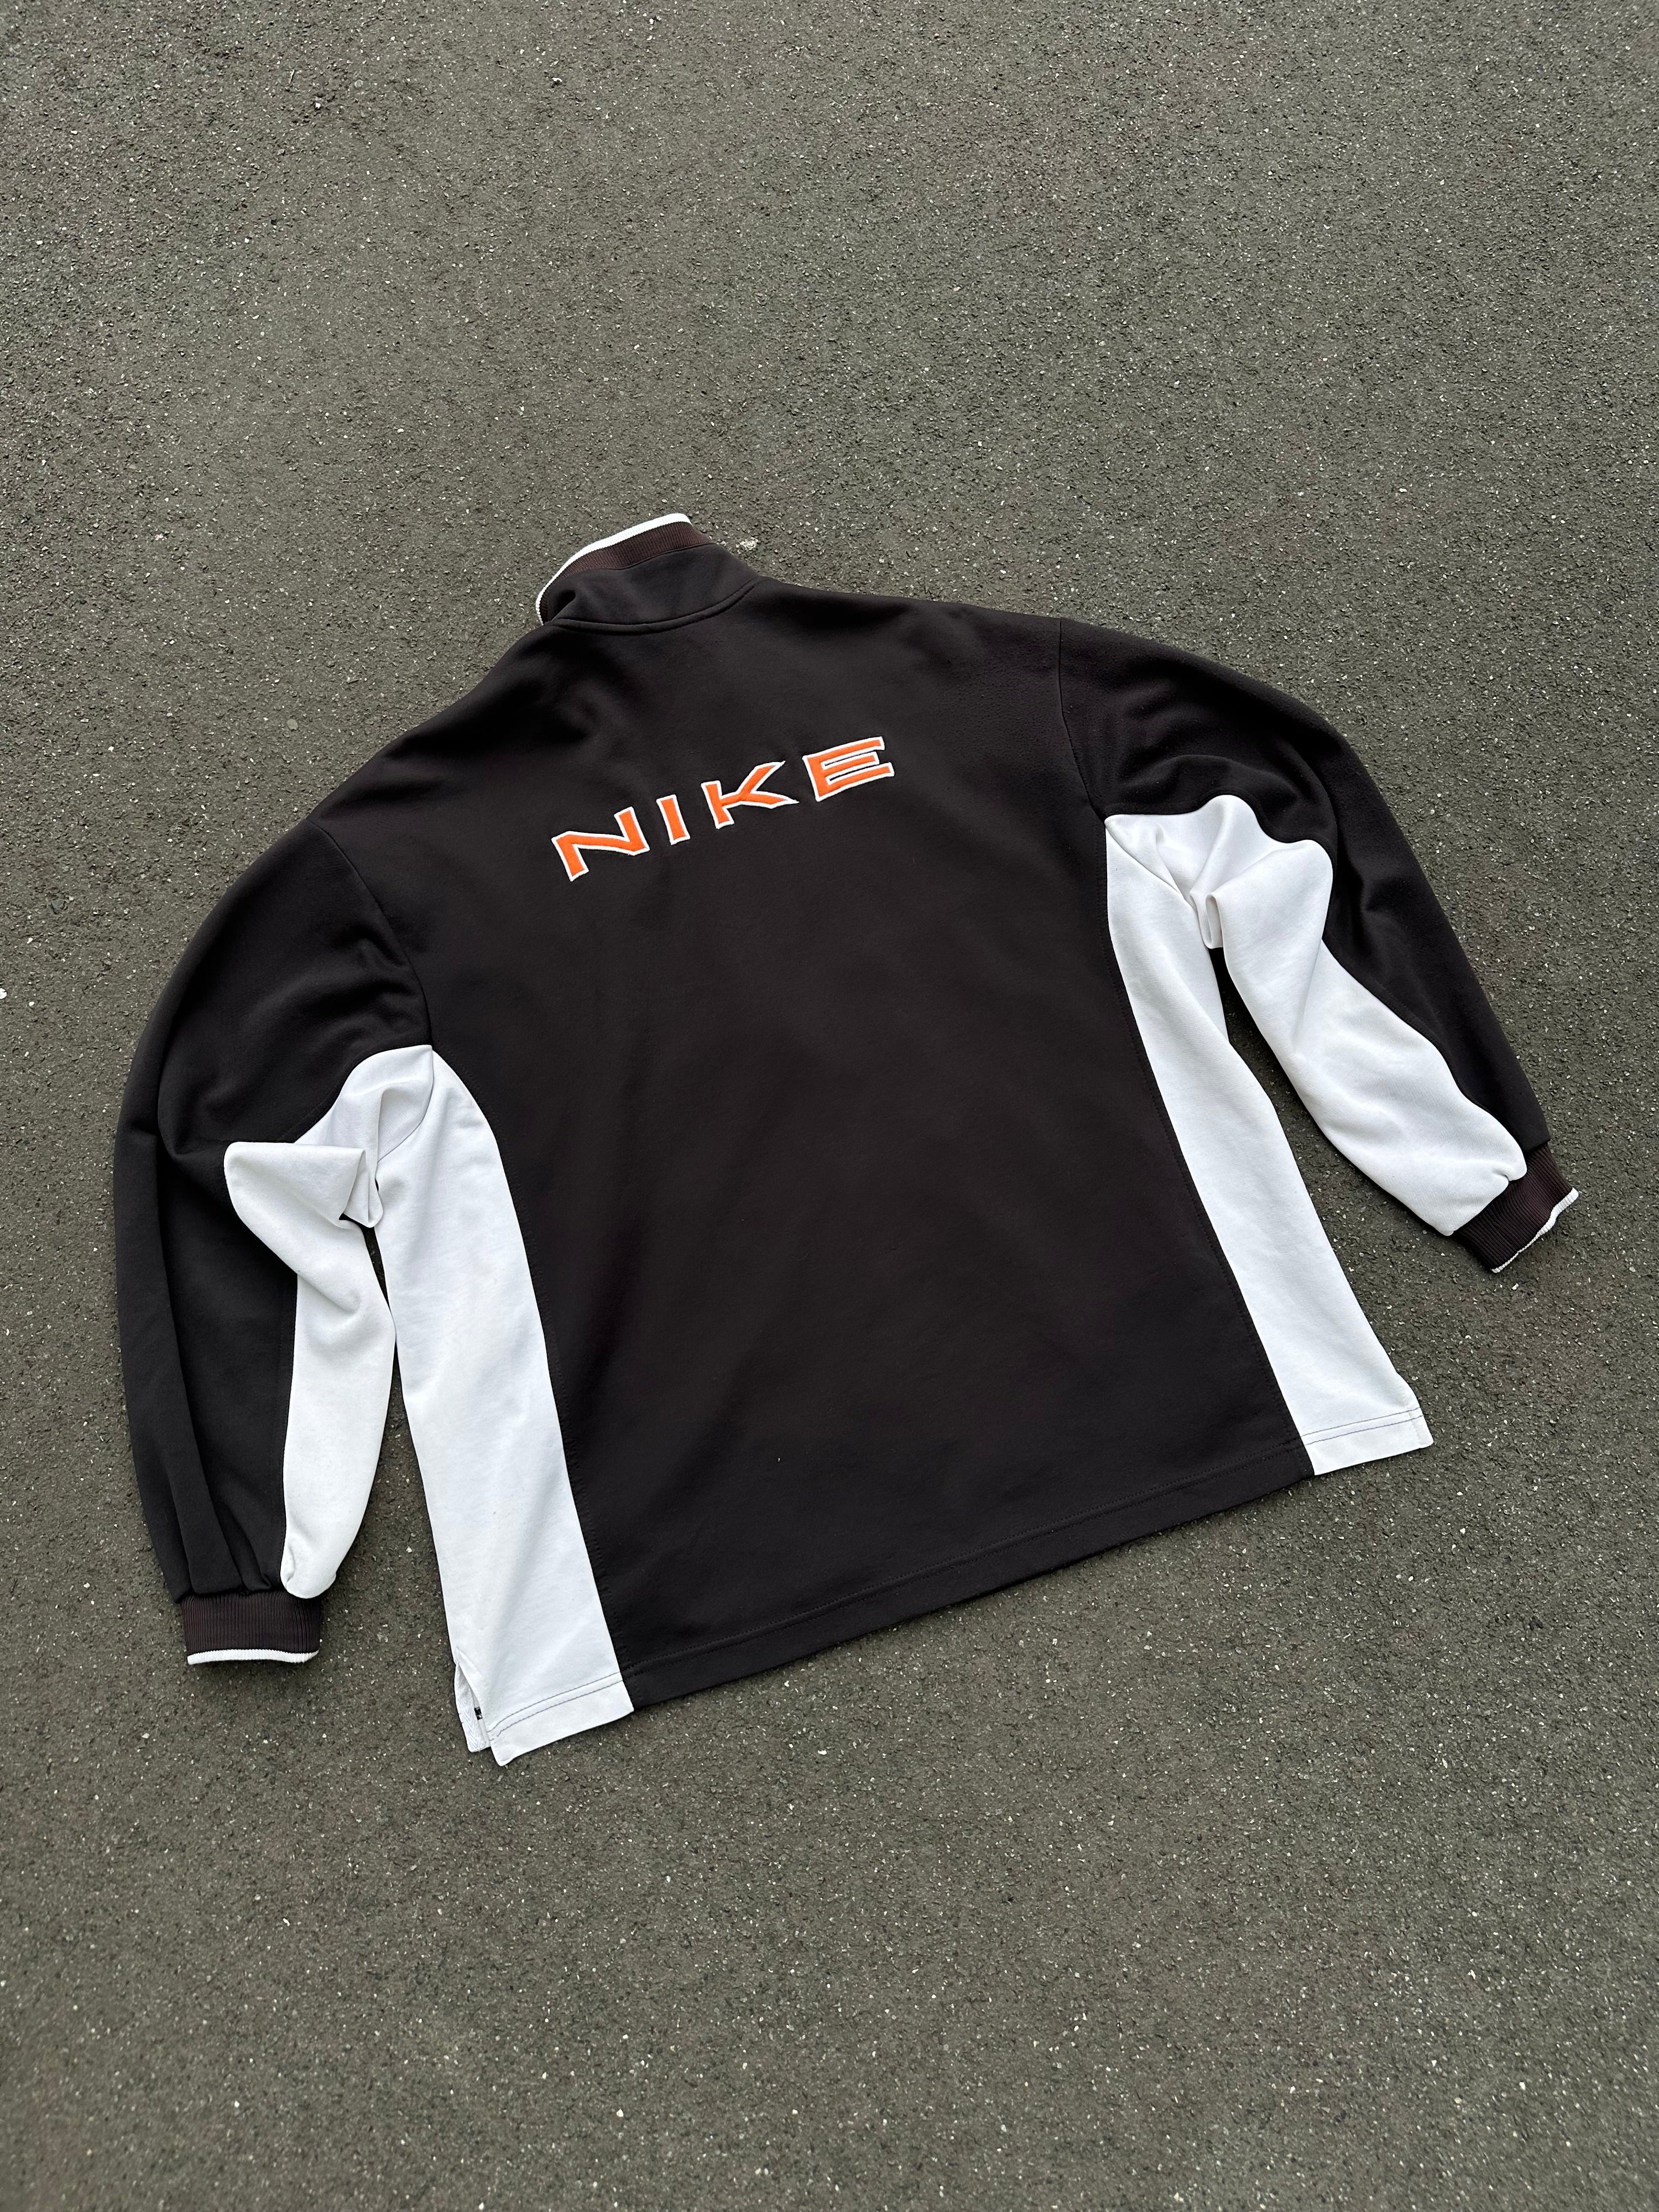 90s Nike Vintage Trainingsjacke (XL)